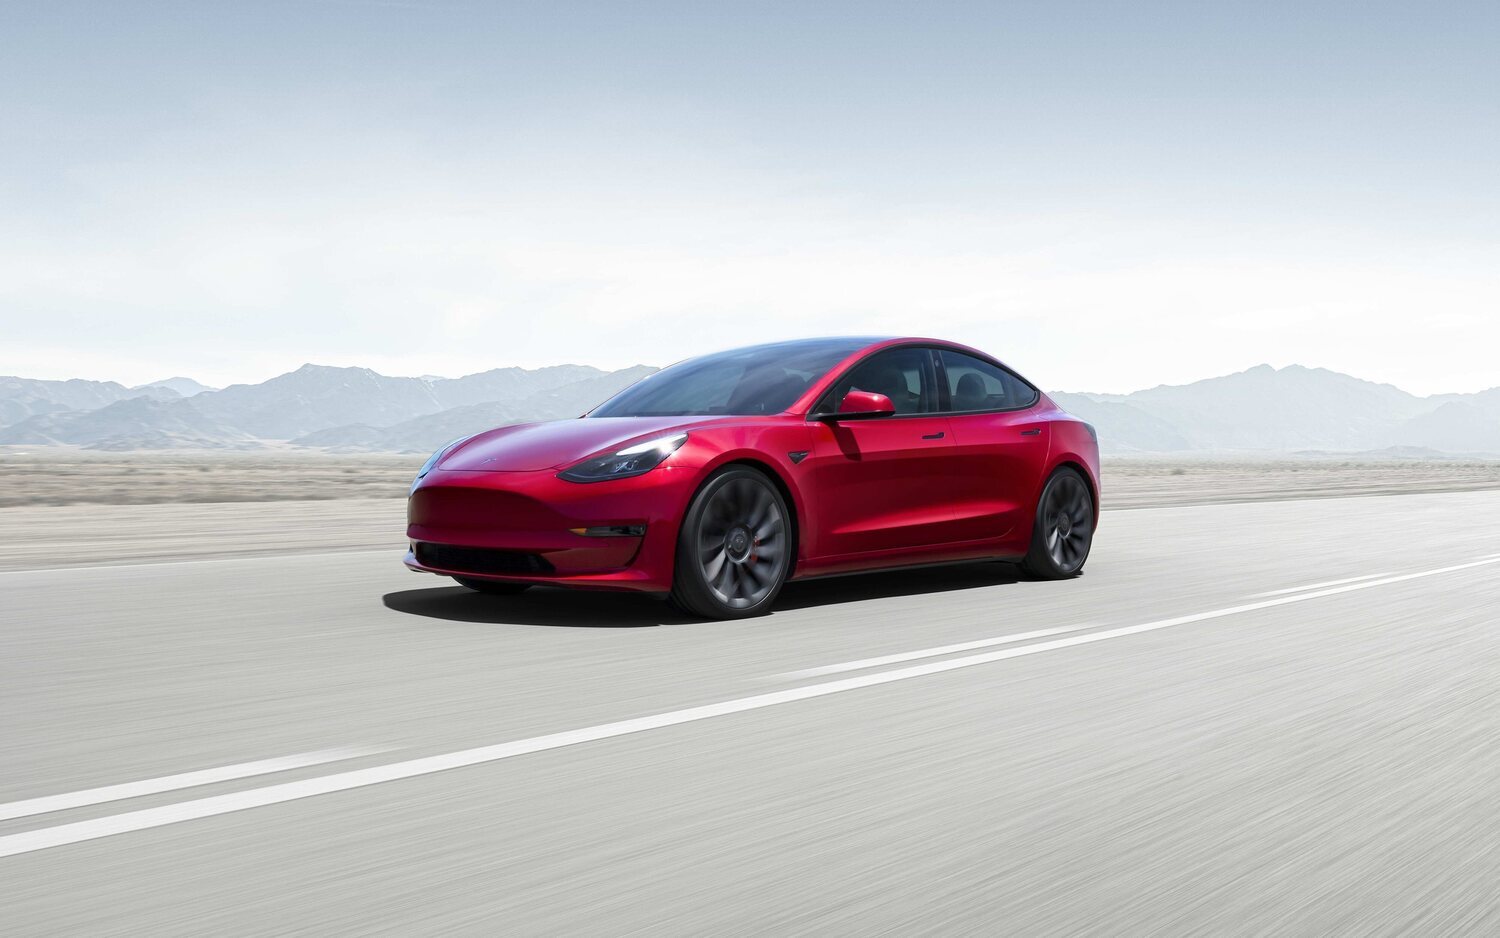 Tesla renovará la planta de Fremont para producir el Model 3